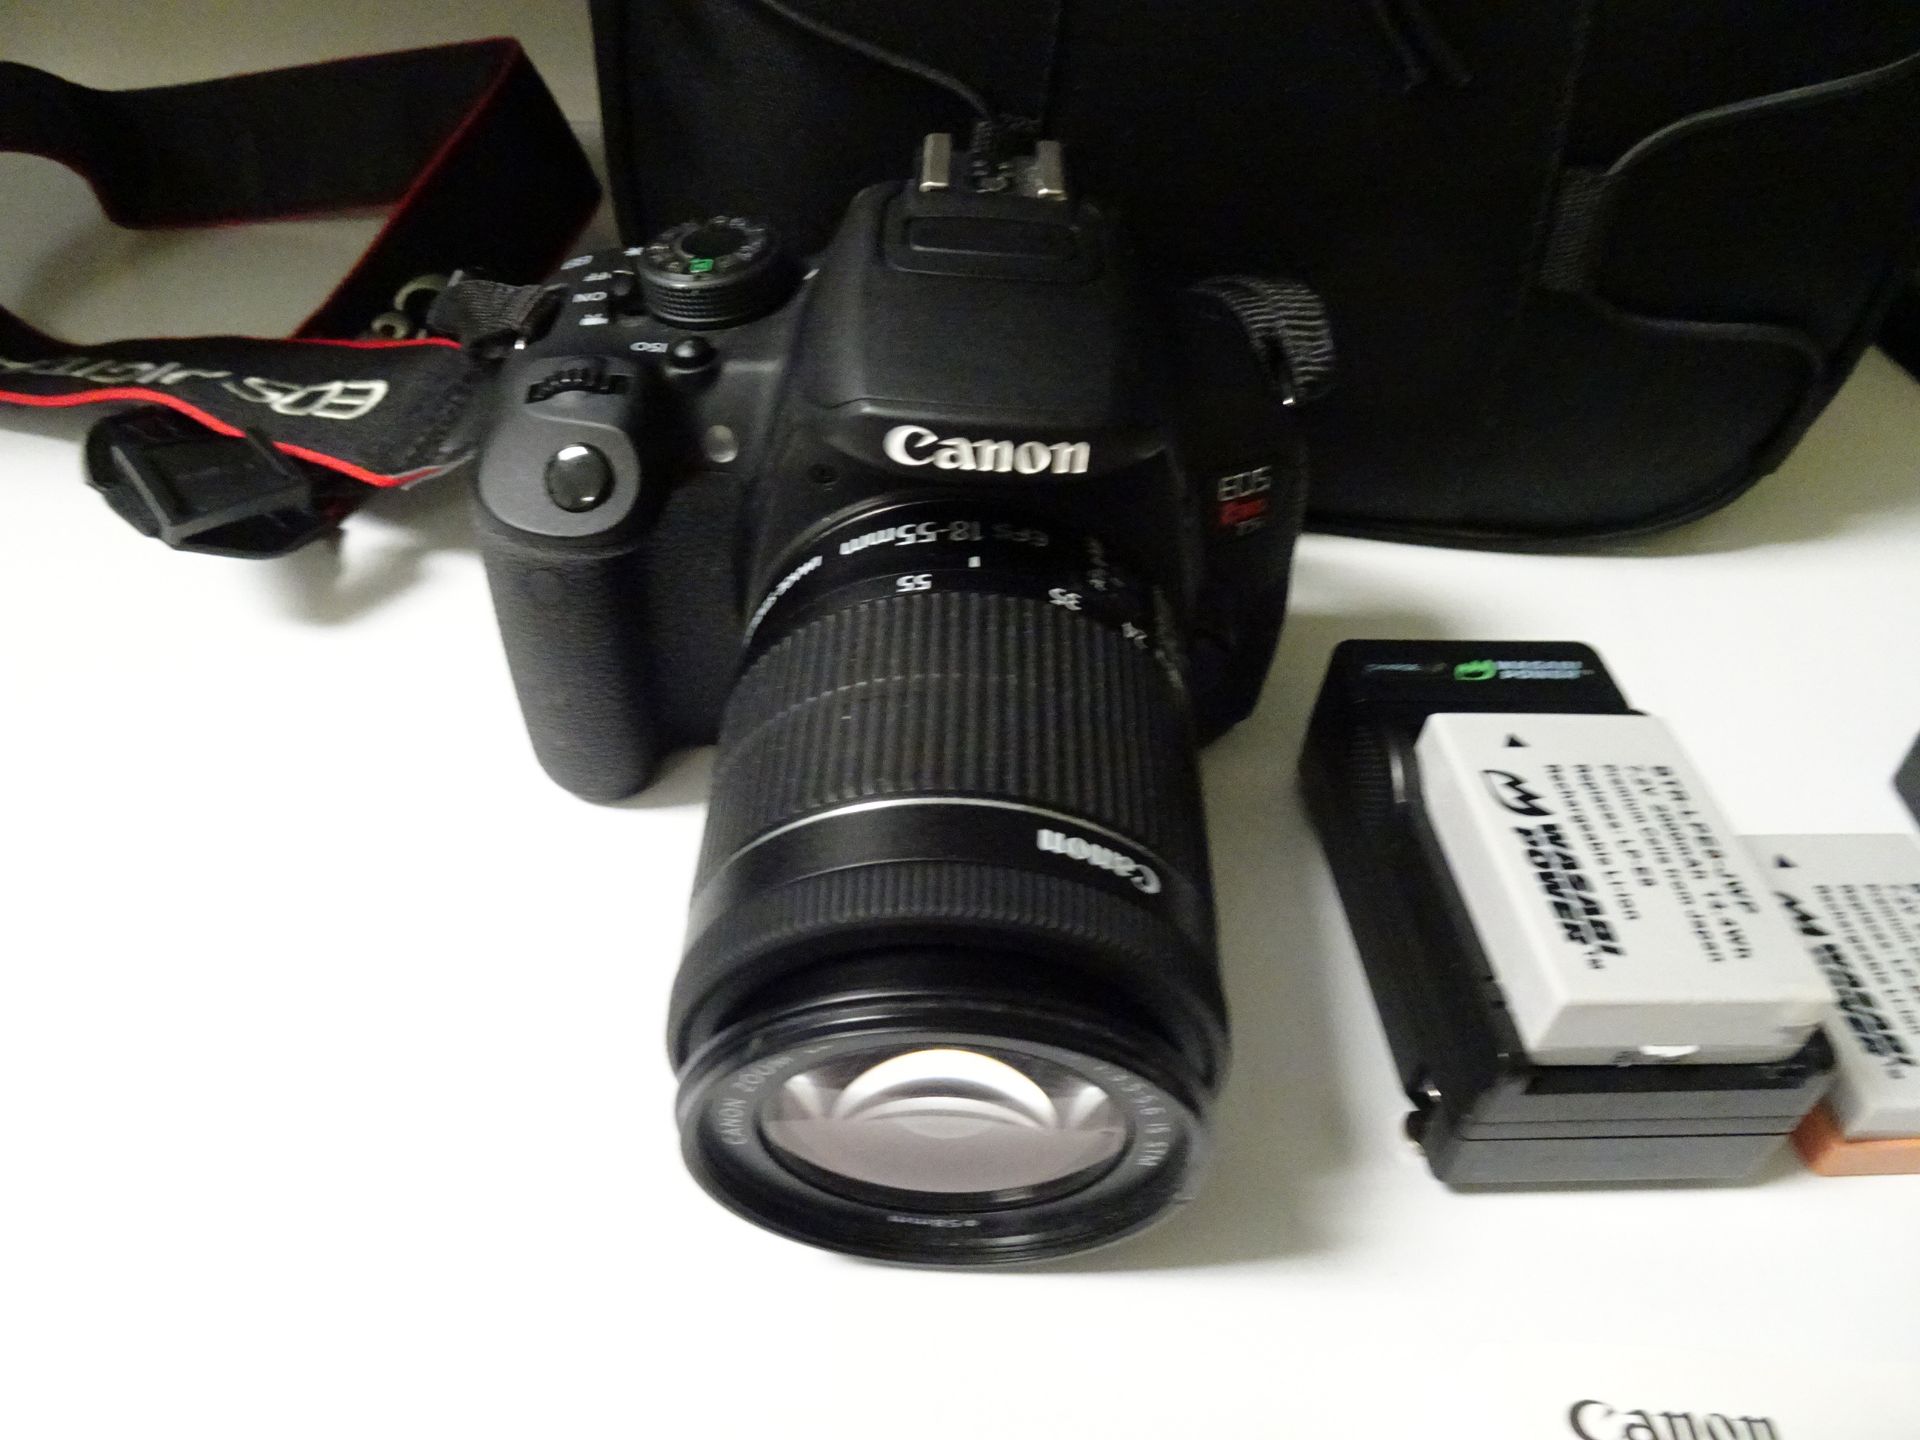 Canon EOS Rebel T5i DSLR sn 302075003371 w/ Canon EF-S 18-55mm 1:3.5-5.6 IS STM /58mm Lens, (2)